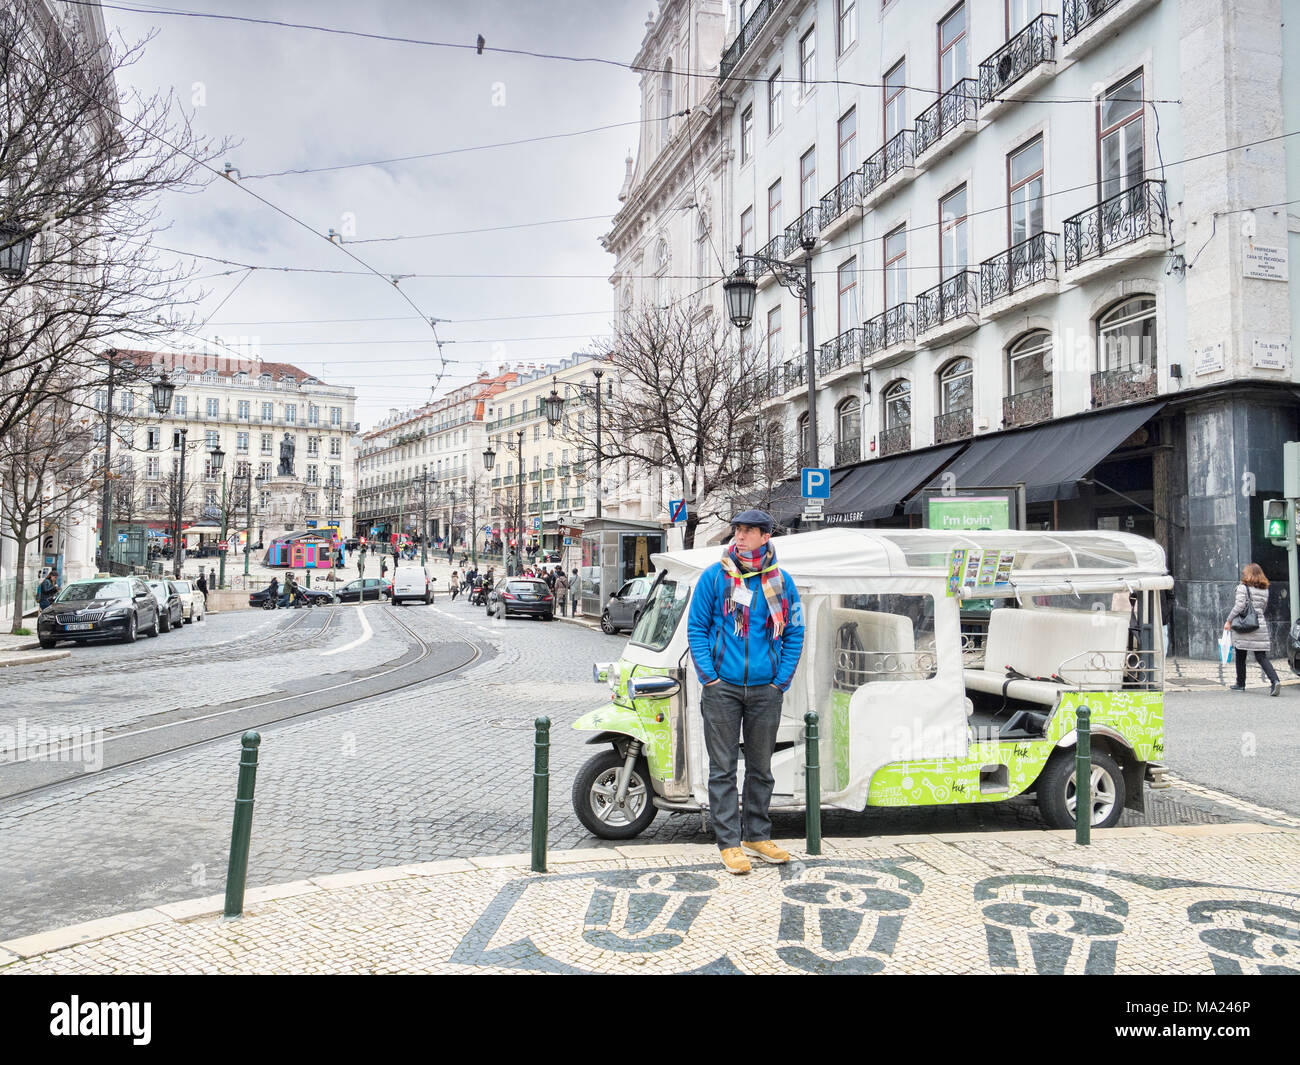 Vom 7. März 2018: Lissabon, Portugal - Tuk Tuk Fahrer wrappede Aufwärmen, Warten auf Business in den Straßen von Lissabon im frühen Frühling. Stockfoto